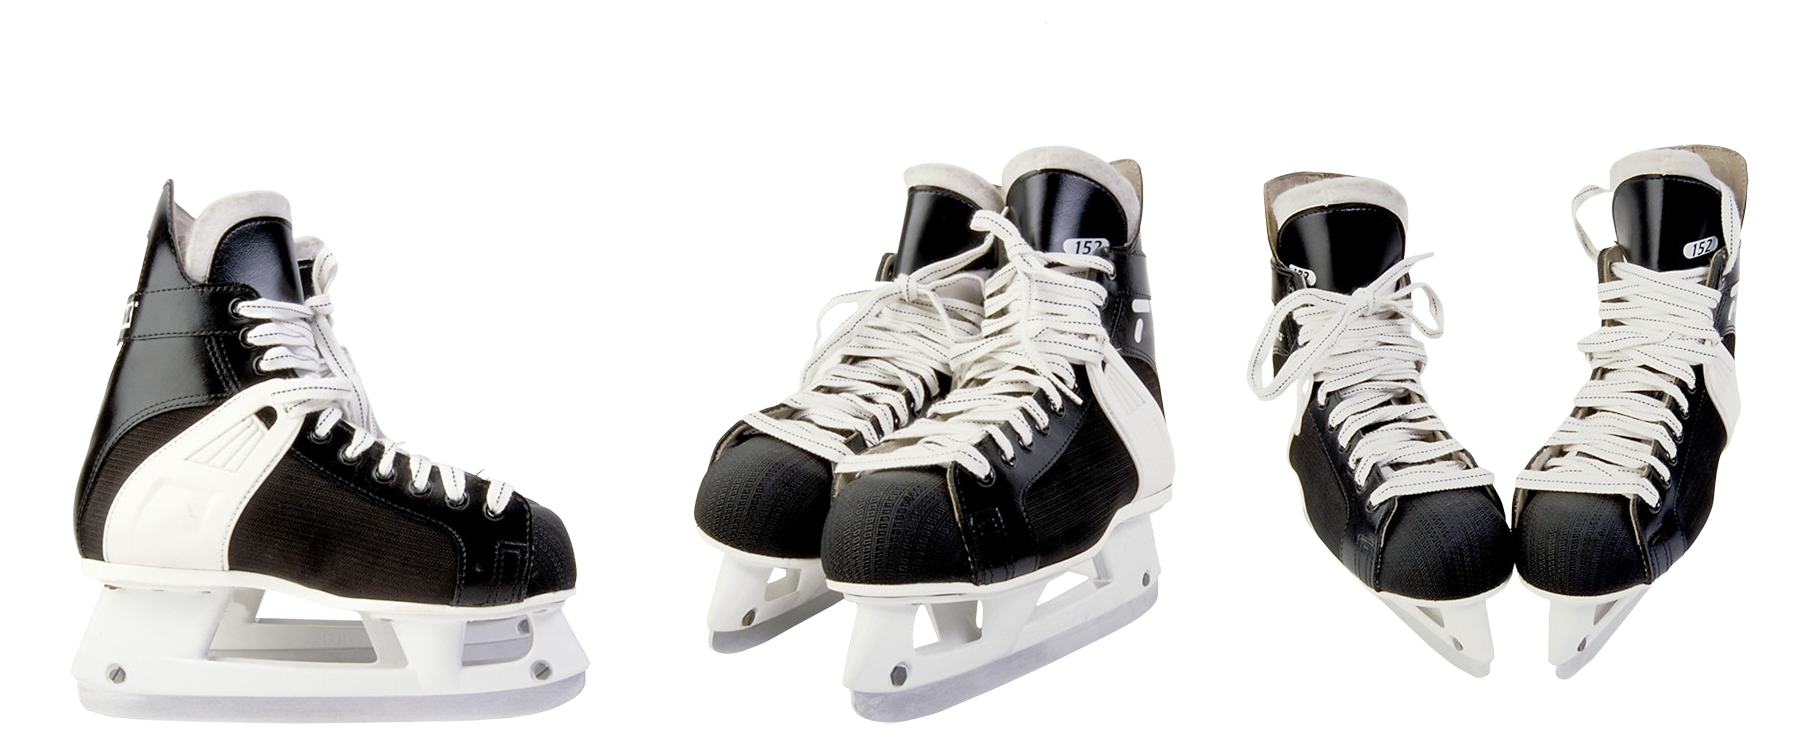 Skate inline skates clip. Clipart dogs ice skating